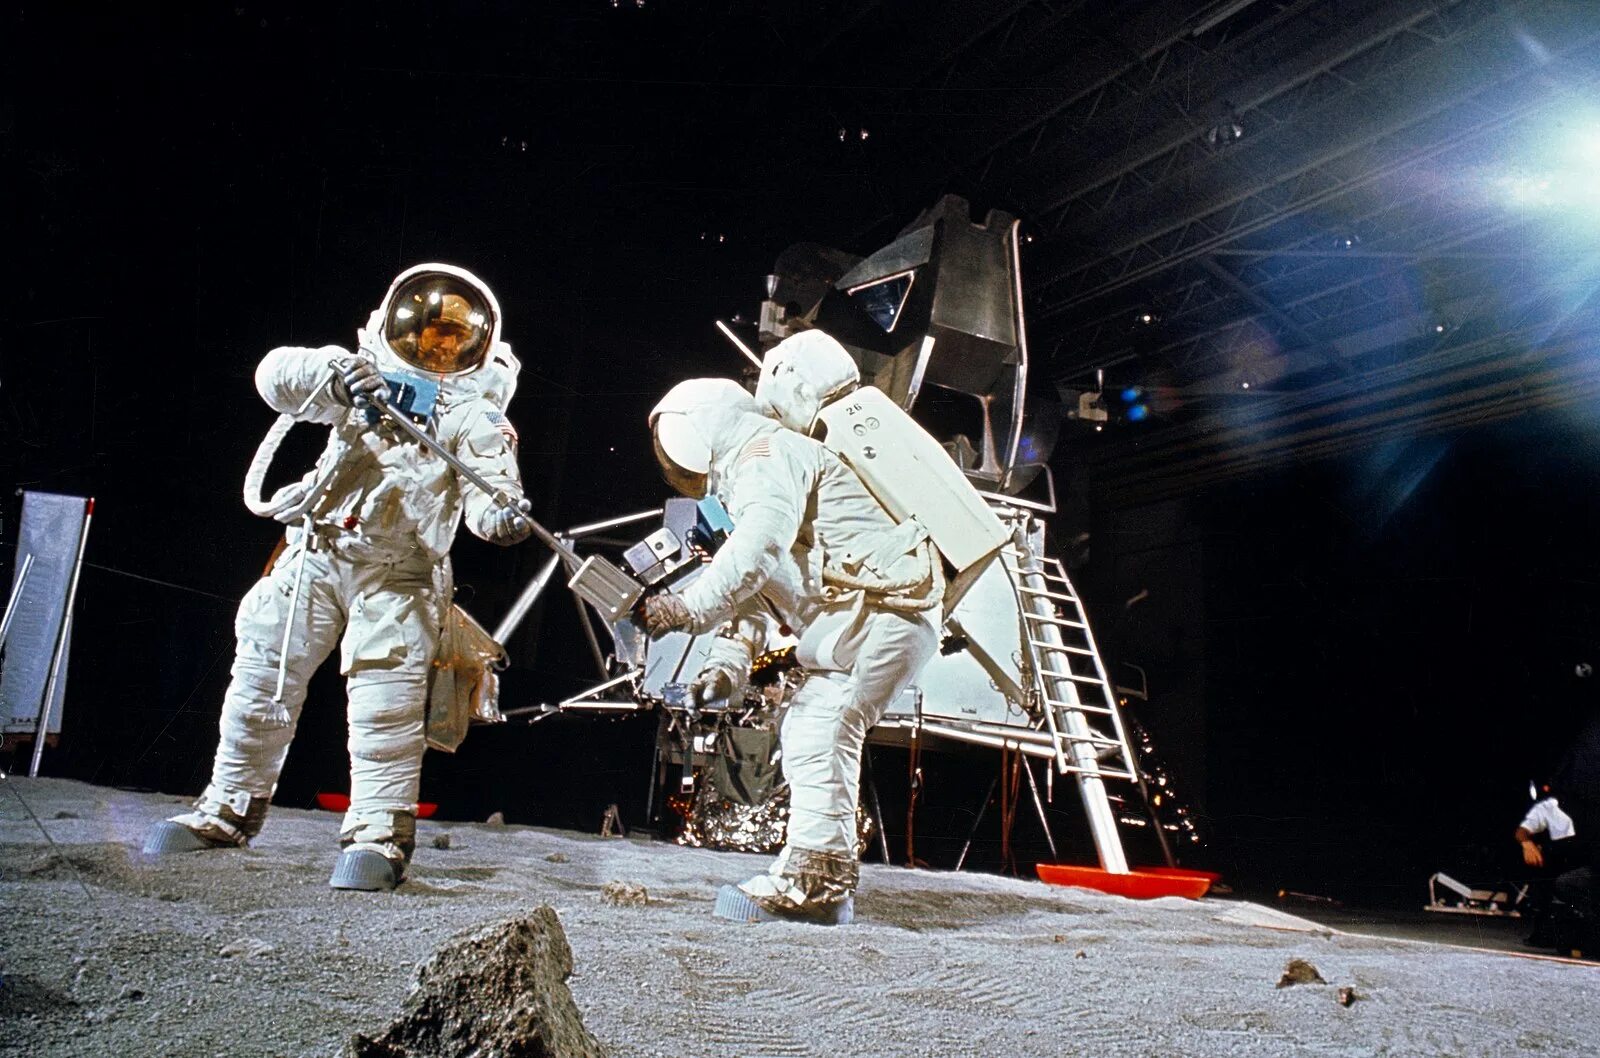 Аполлон 1969. Аполлон 11 1969. Armstrong on the moon